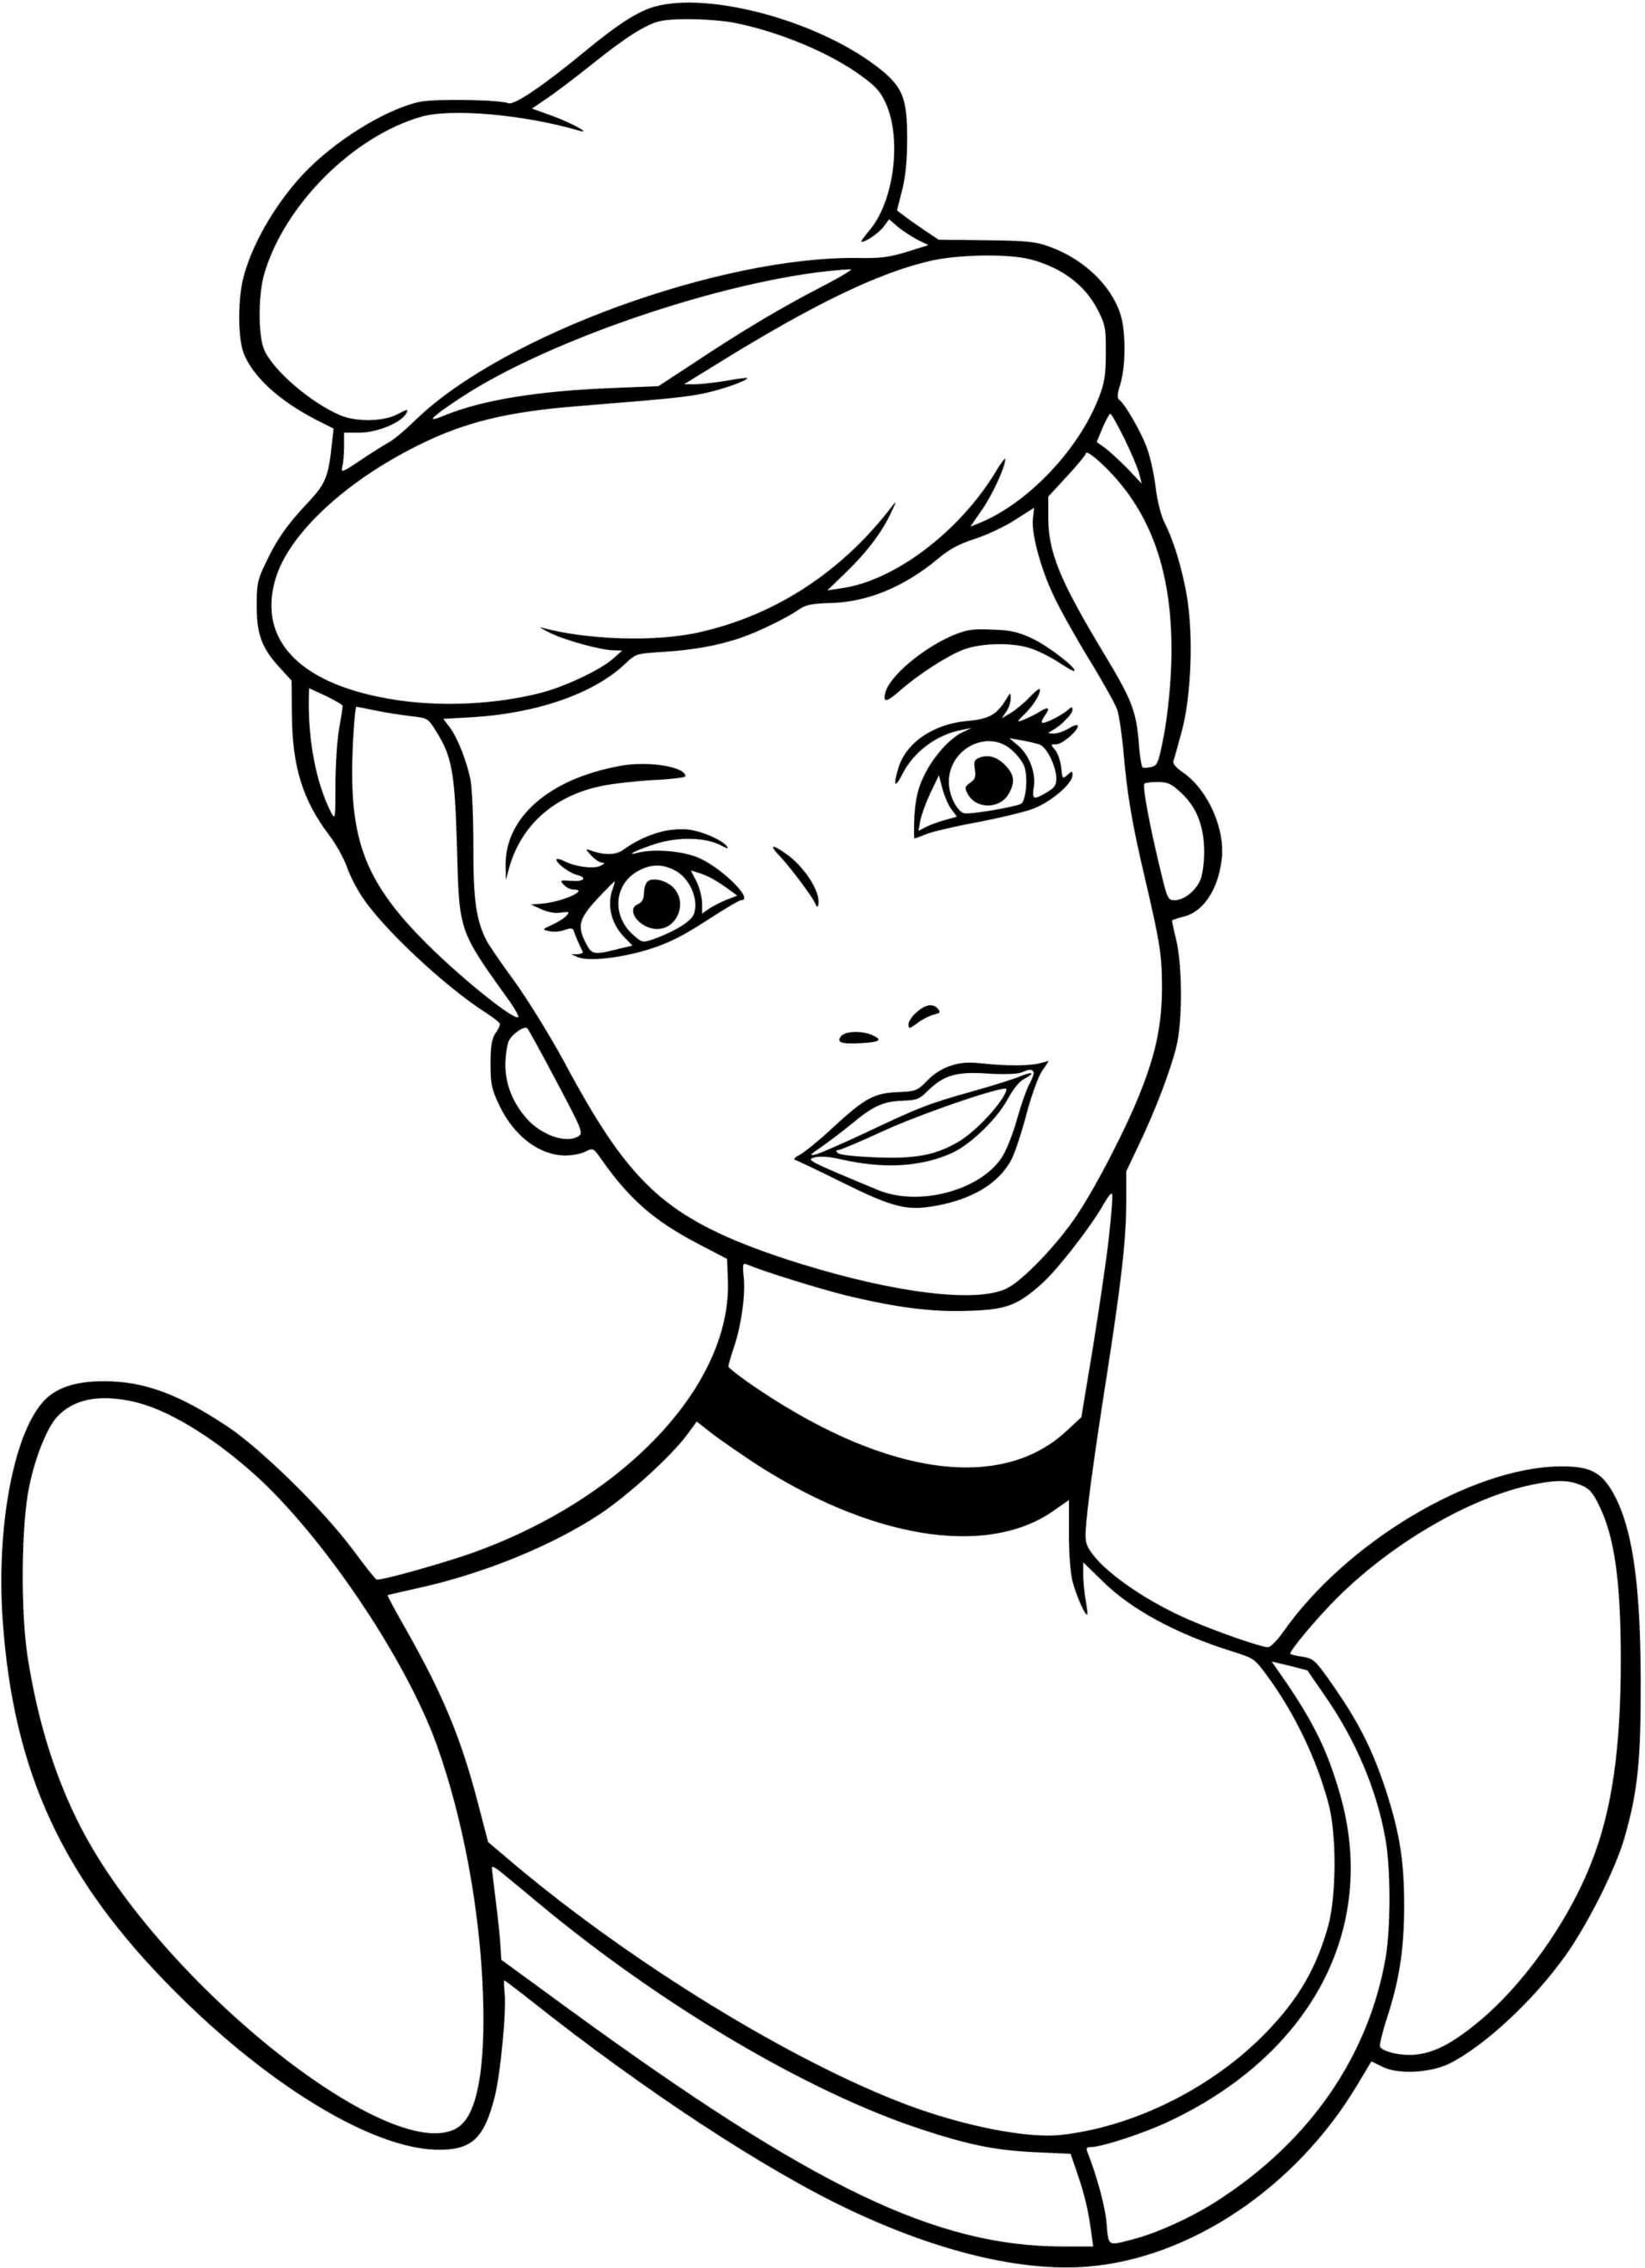 Disney Princess Cindrella Coloring Page